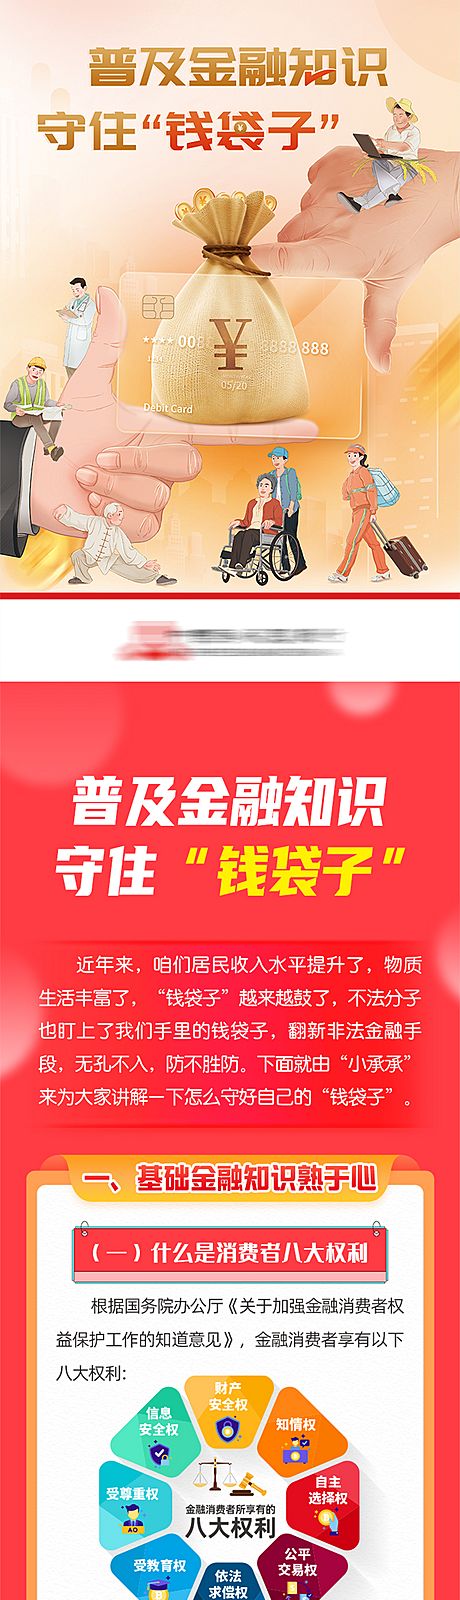 仙图网-非法集资防范诈骗长图海报